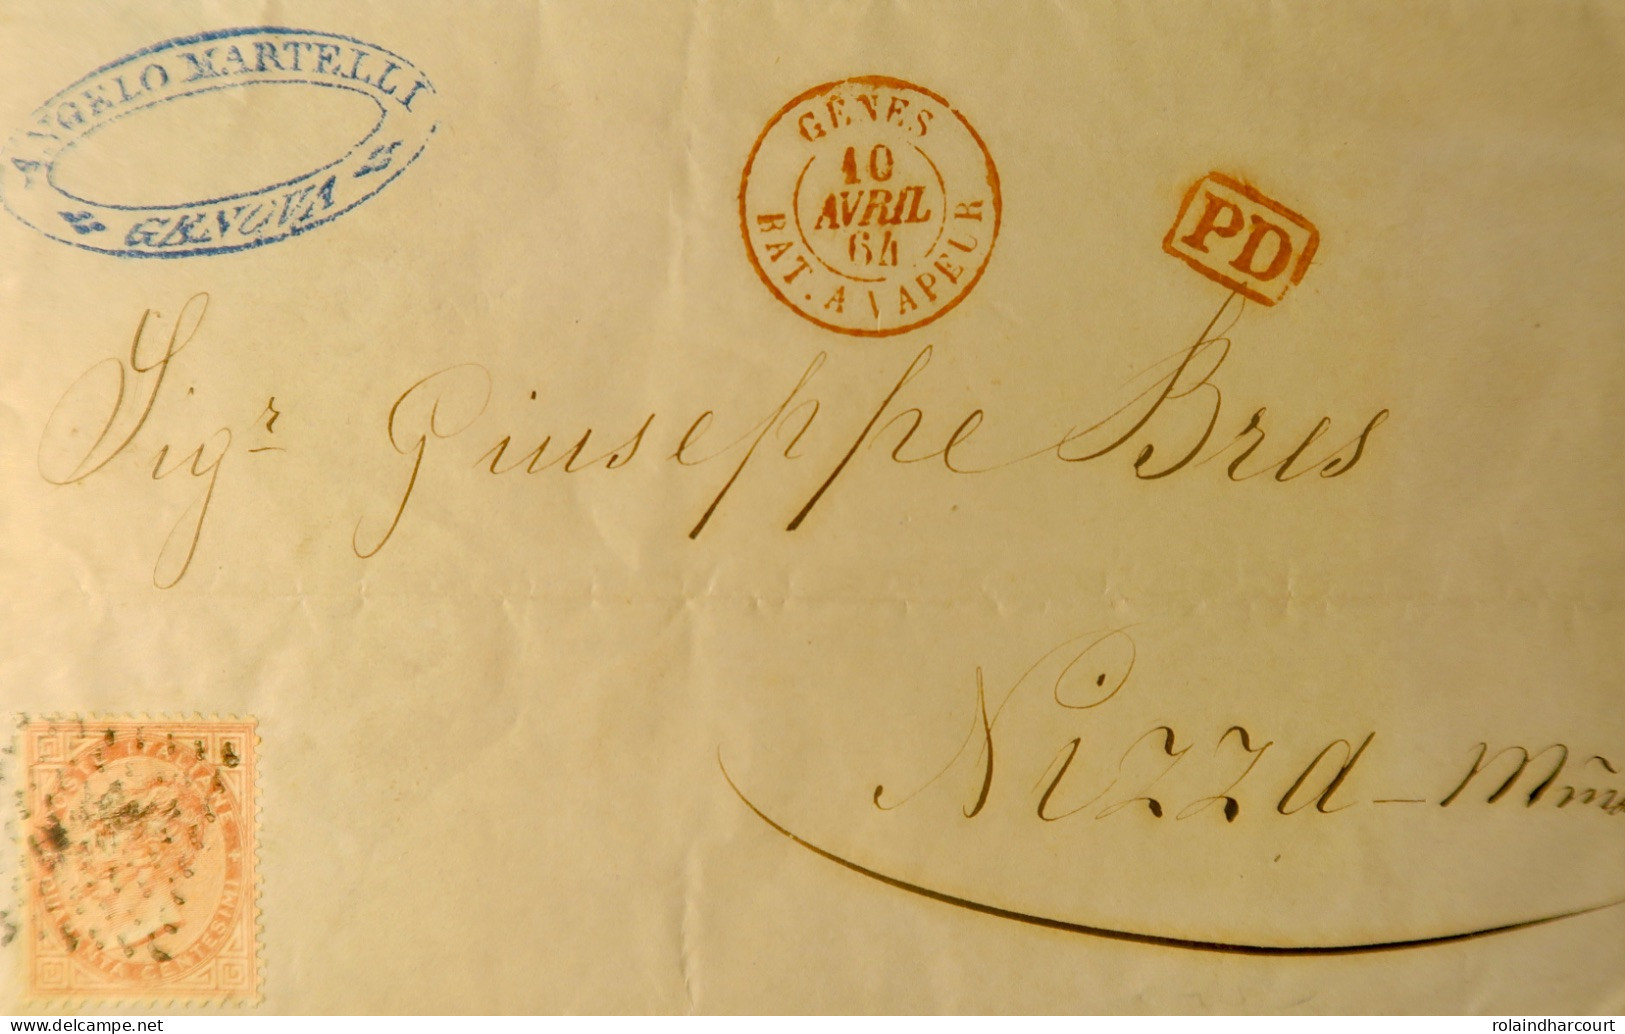 A540 - POSTE MARITIME - Lettre (LAC) GÊNES (10 AVRIL 1864) à NICE Par BATEAU à VAPEUR (LIGNE D'ITALIE) Cachet SARDE - Maritime Post